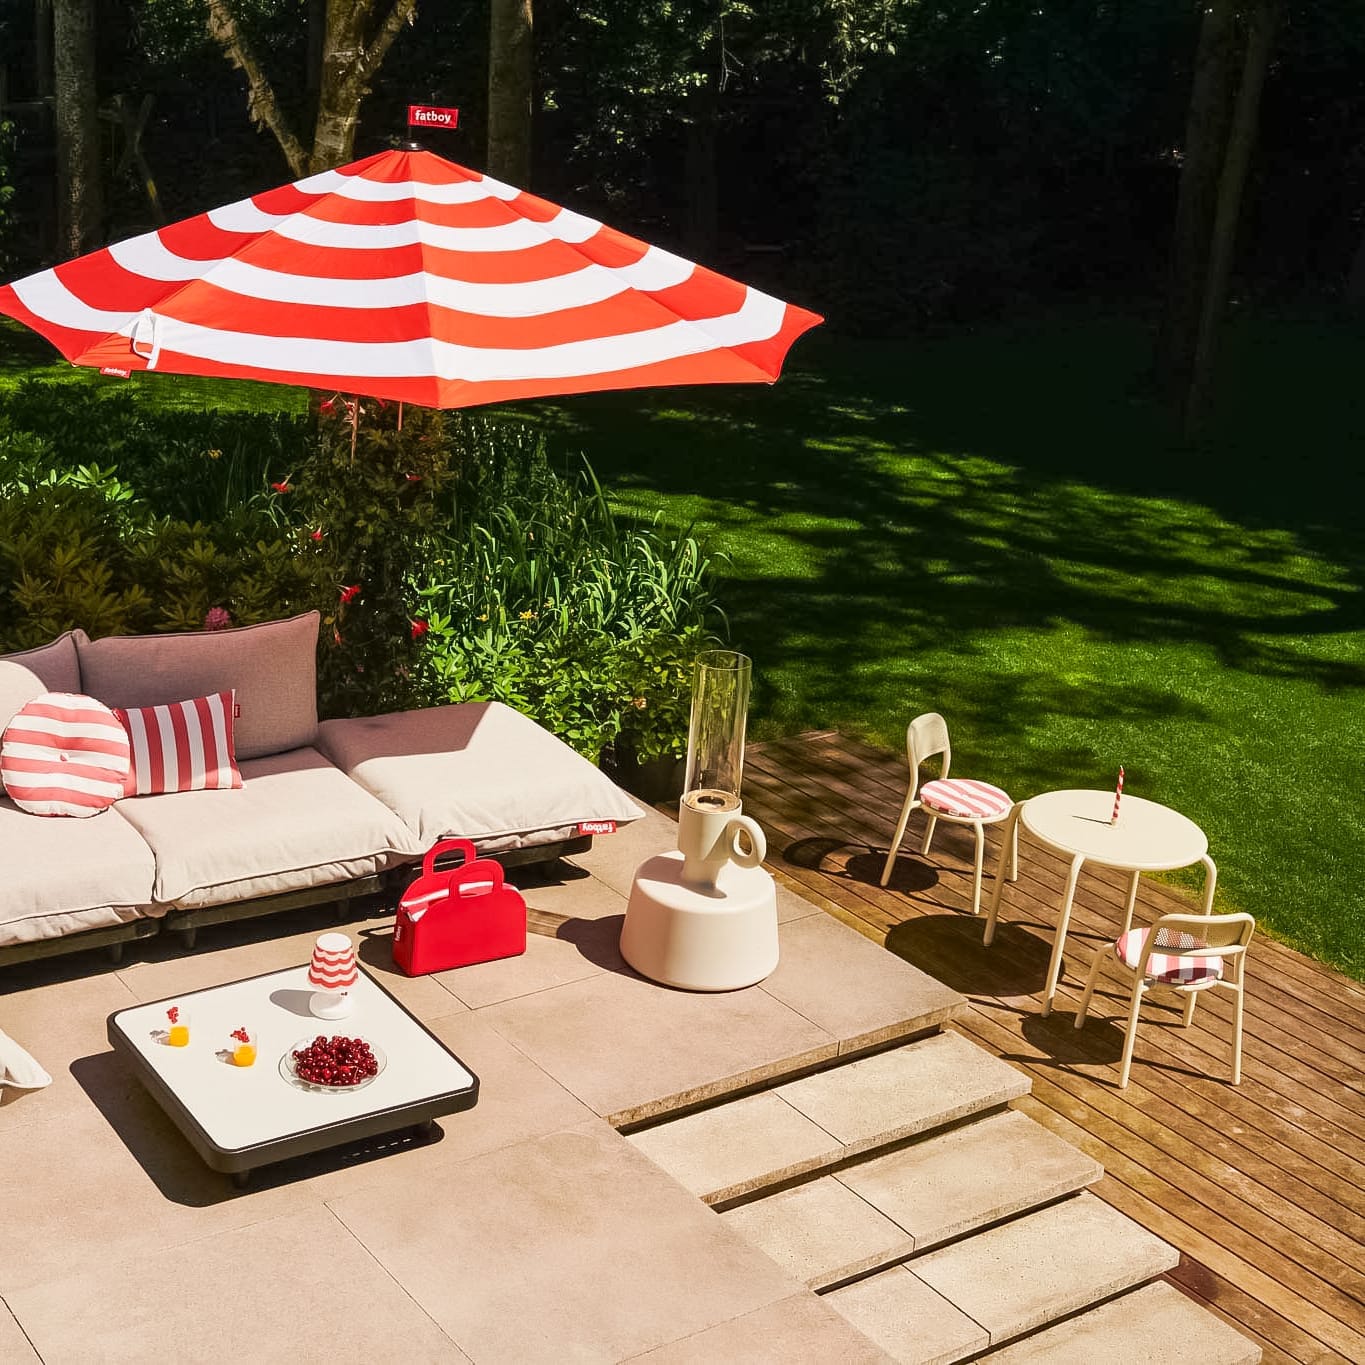 Profitez de votre terrasse avec la chaise Toní de Fatboy, disponible en plusieurs couleurs attrayantes.